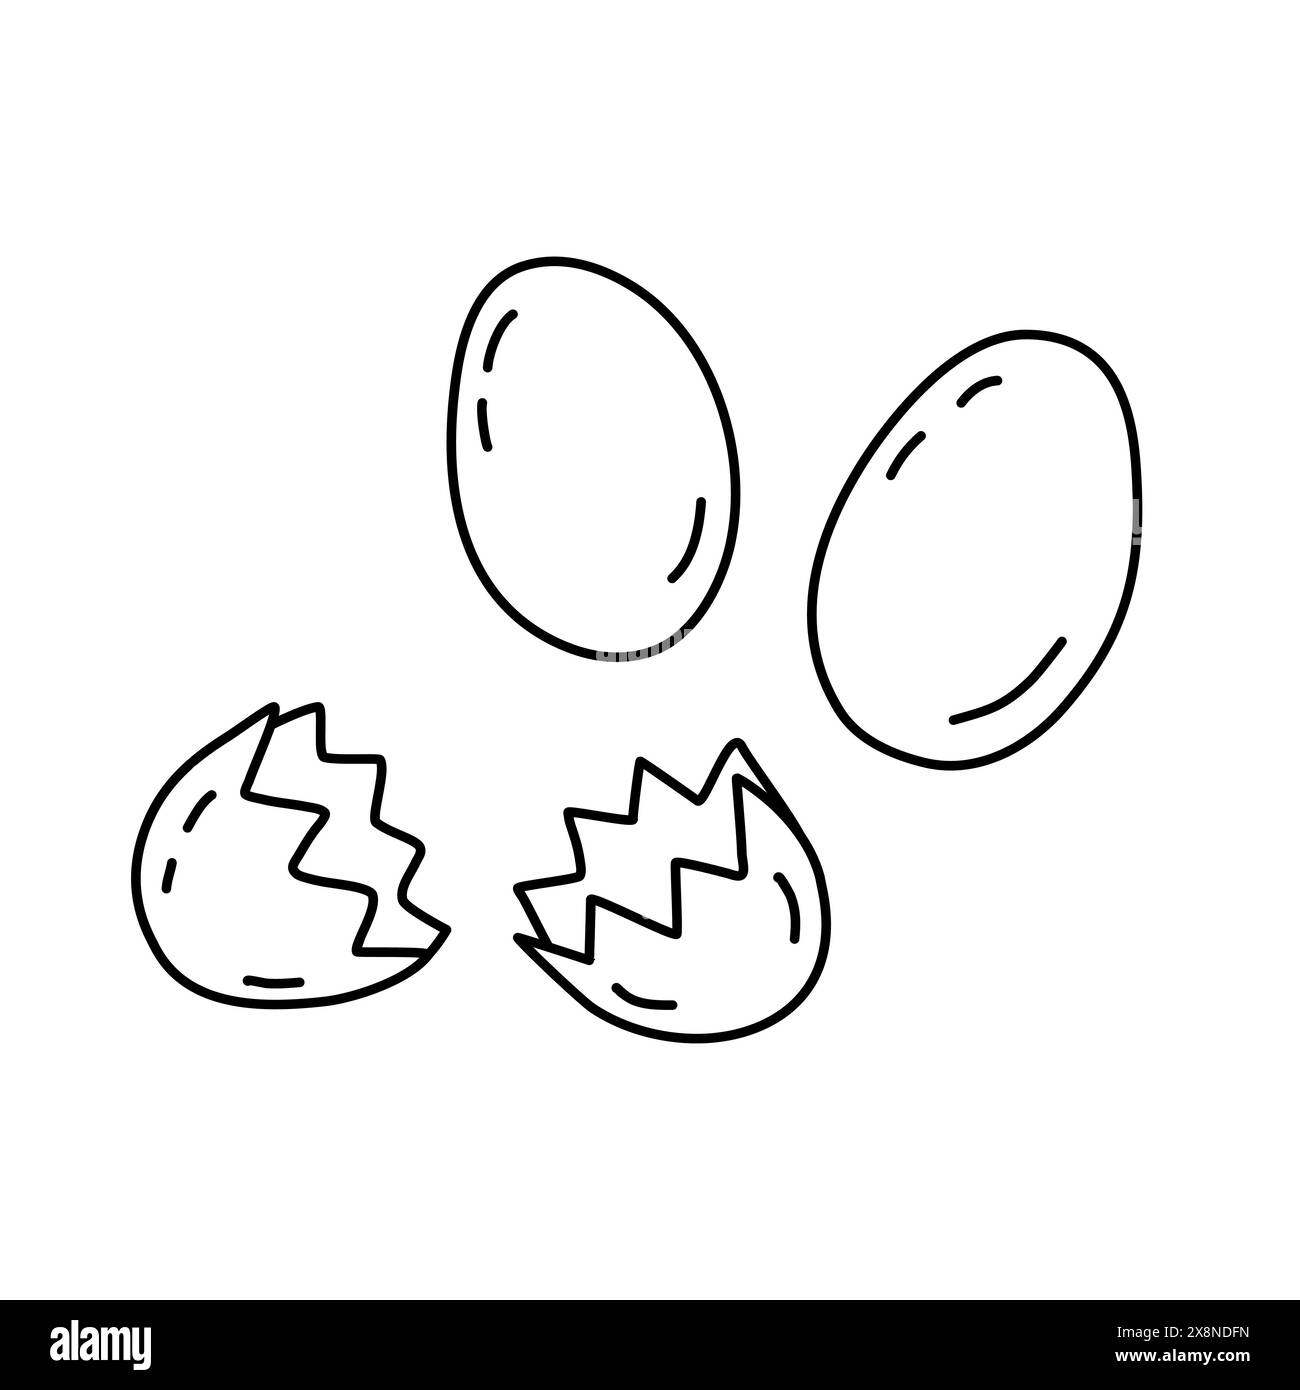 Uova fresche di fattoria intere e rotte, ingredienti da cuocere o da cuocere, illustrazione a forma di vettoriale piatto per libri da colorare per bambini Illustrazione Vettoriale